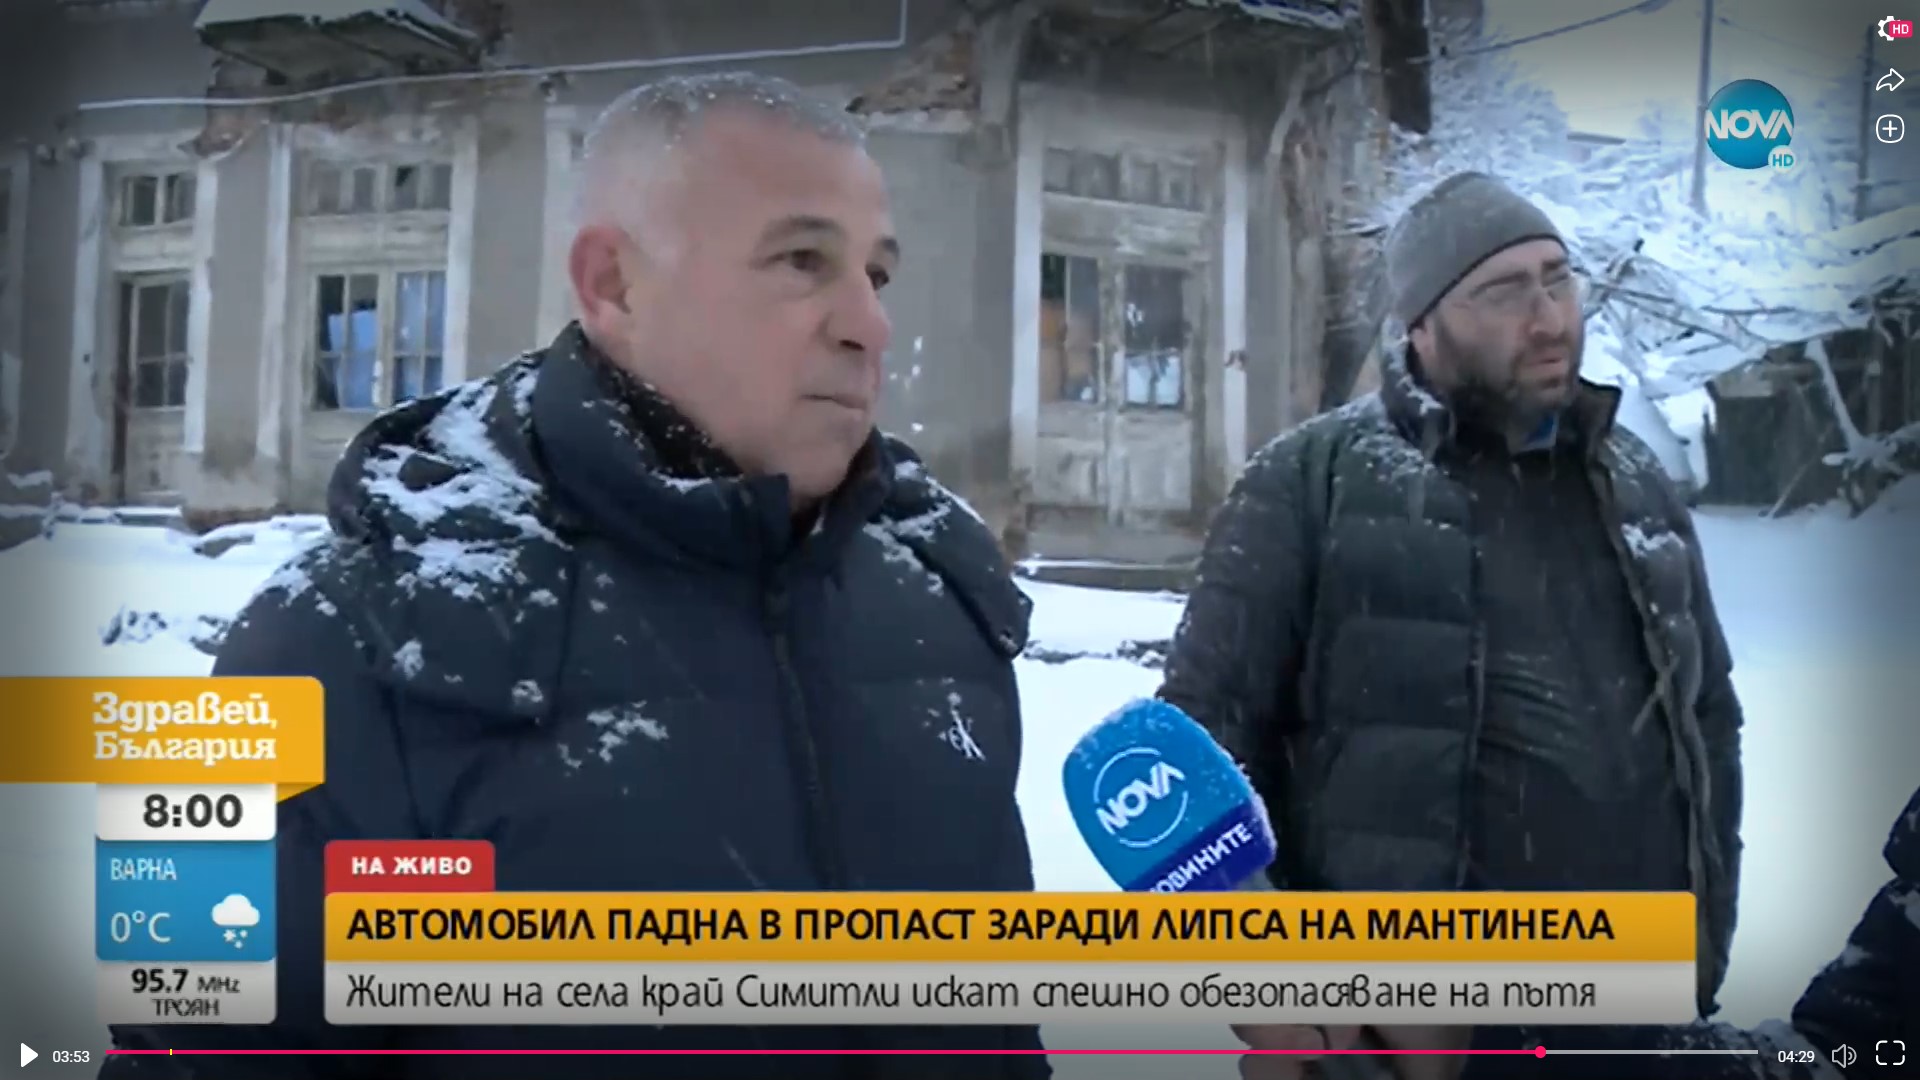 Кметът Апостолов: Вече месеци наред сигнализираме институциите, че трябва да бъдат поставени мантинели по пътя Полето - Брежани